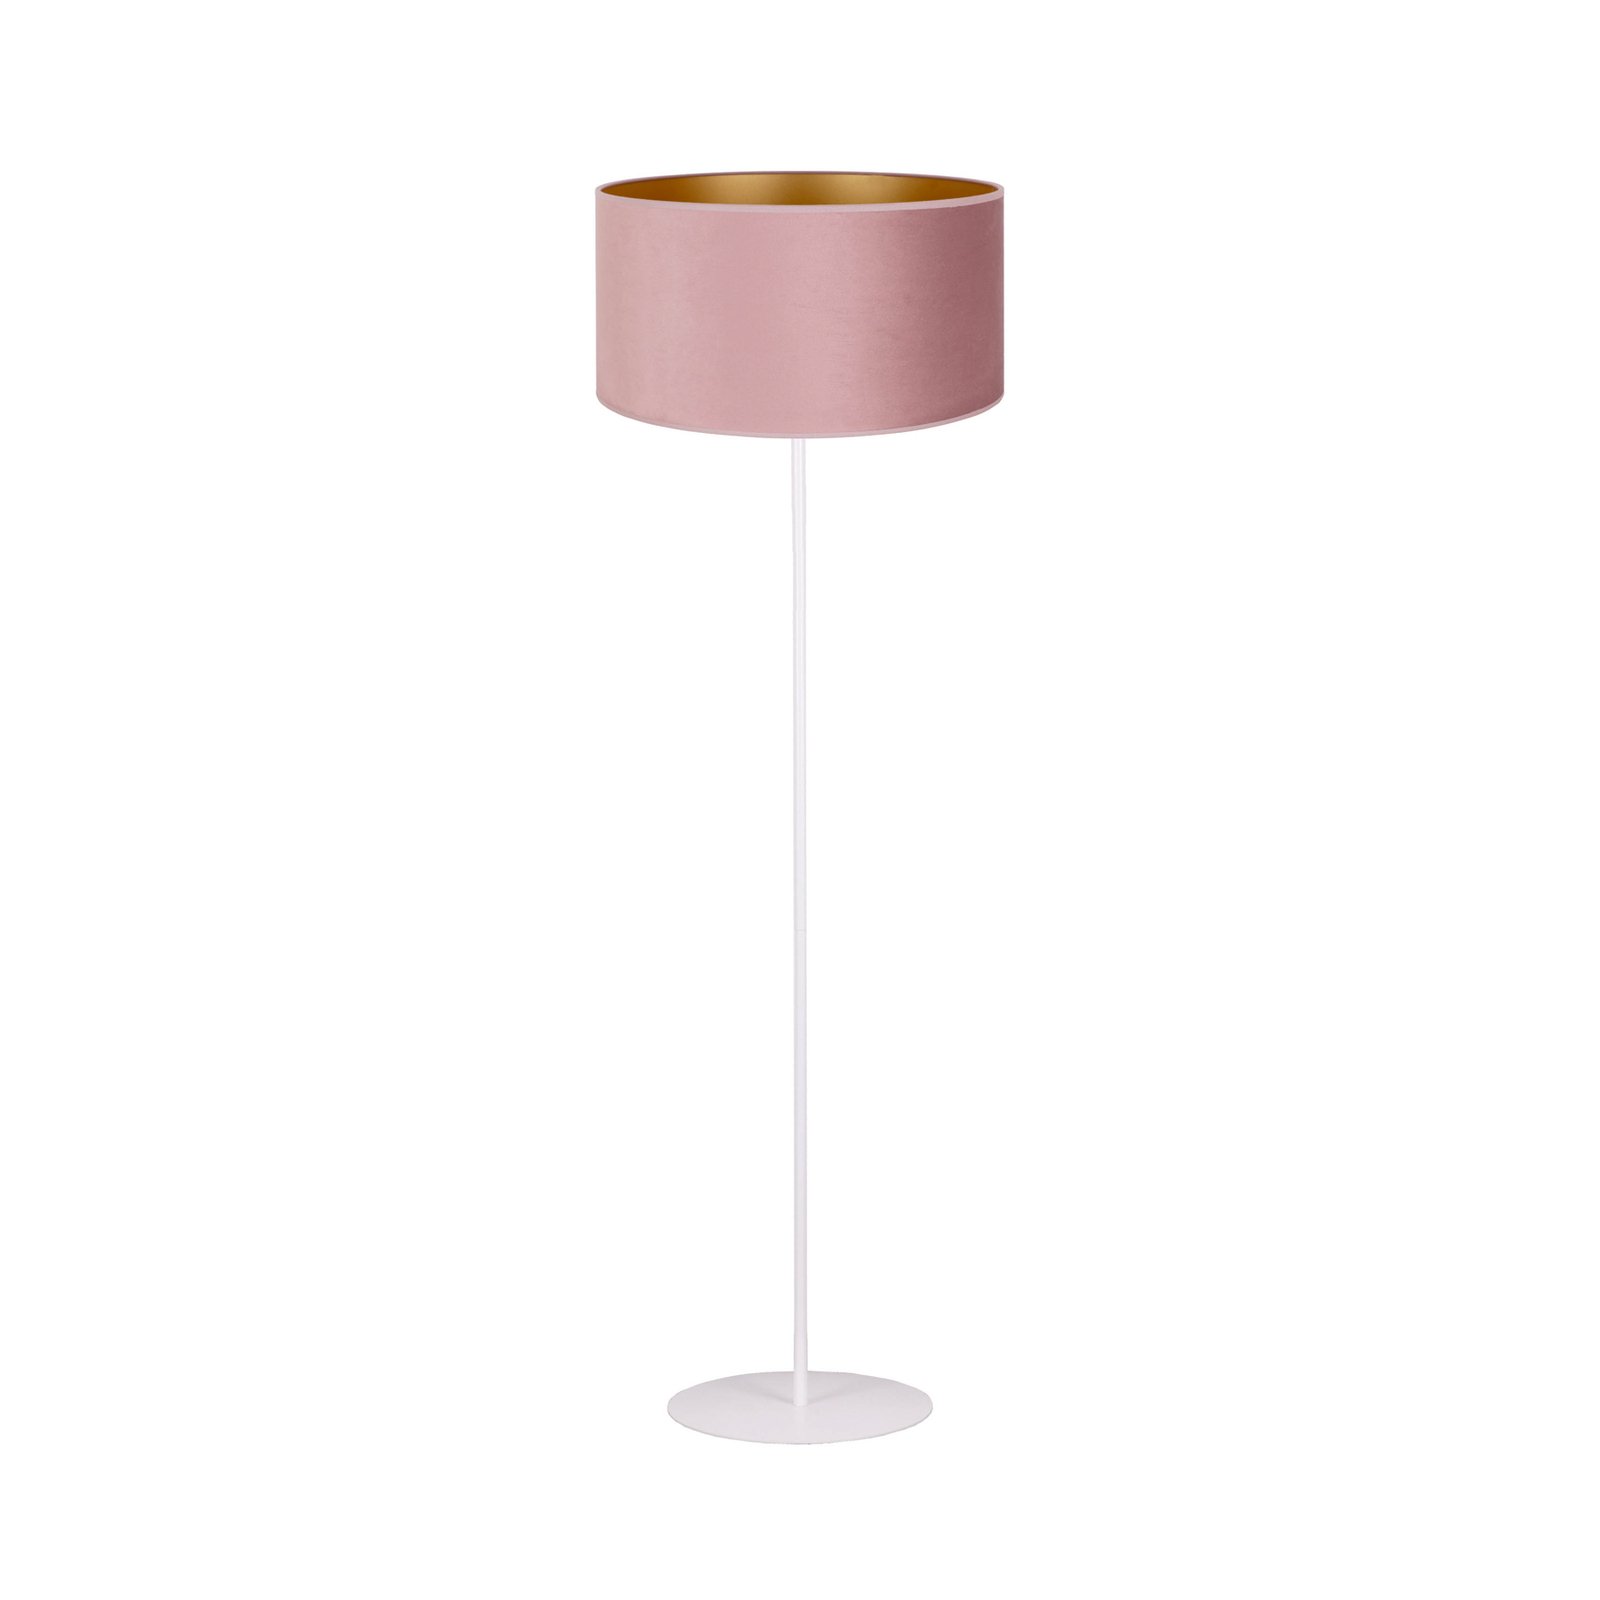 Golden Roller álló lámpa világos rózsaszín/arany